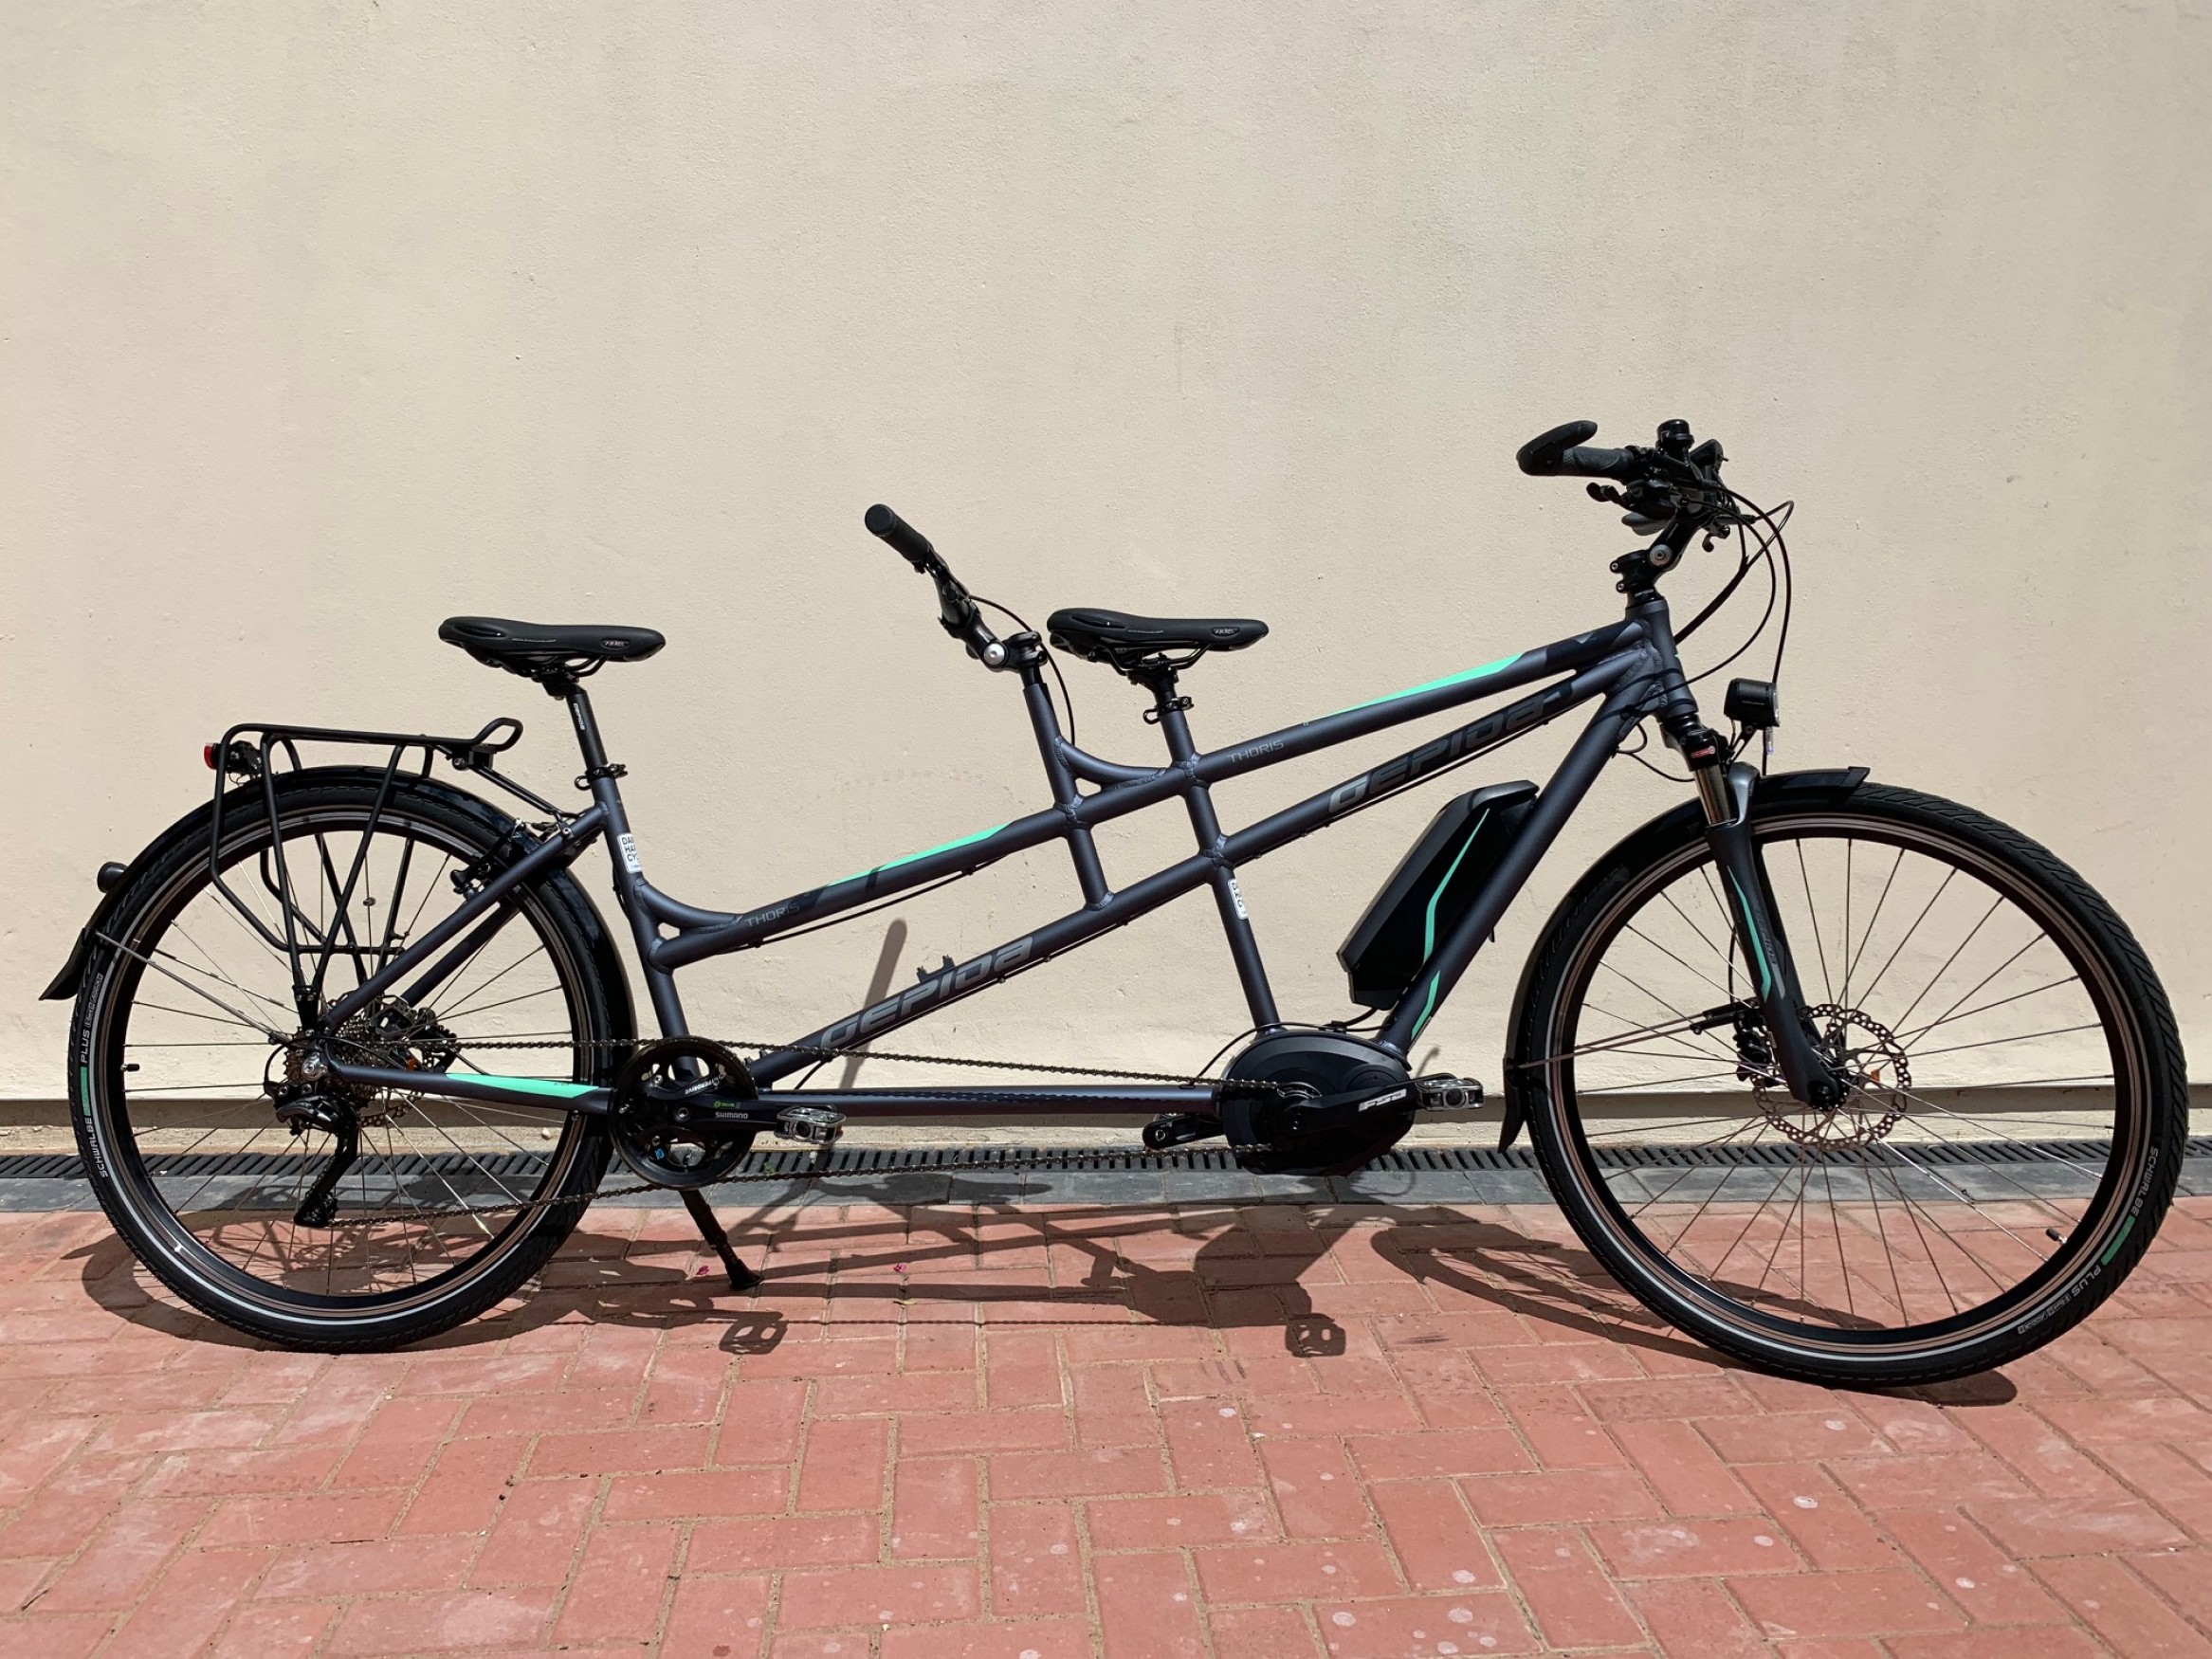 Gepida Thoris - Bosch 2019 Electric | Damian Harris Cycles | E-bike Cardiff UK